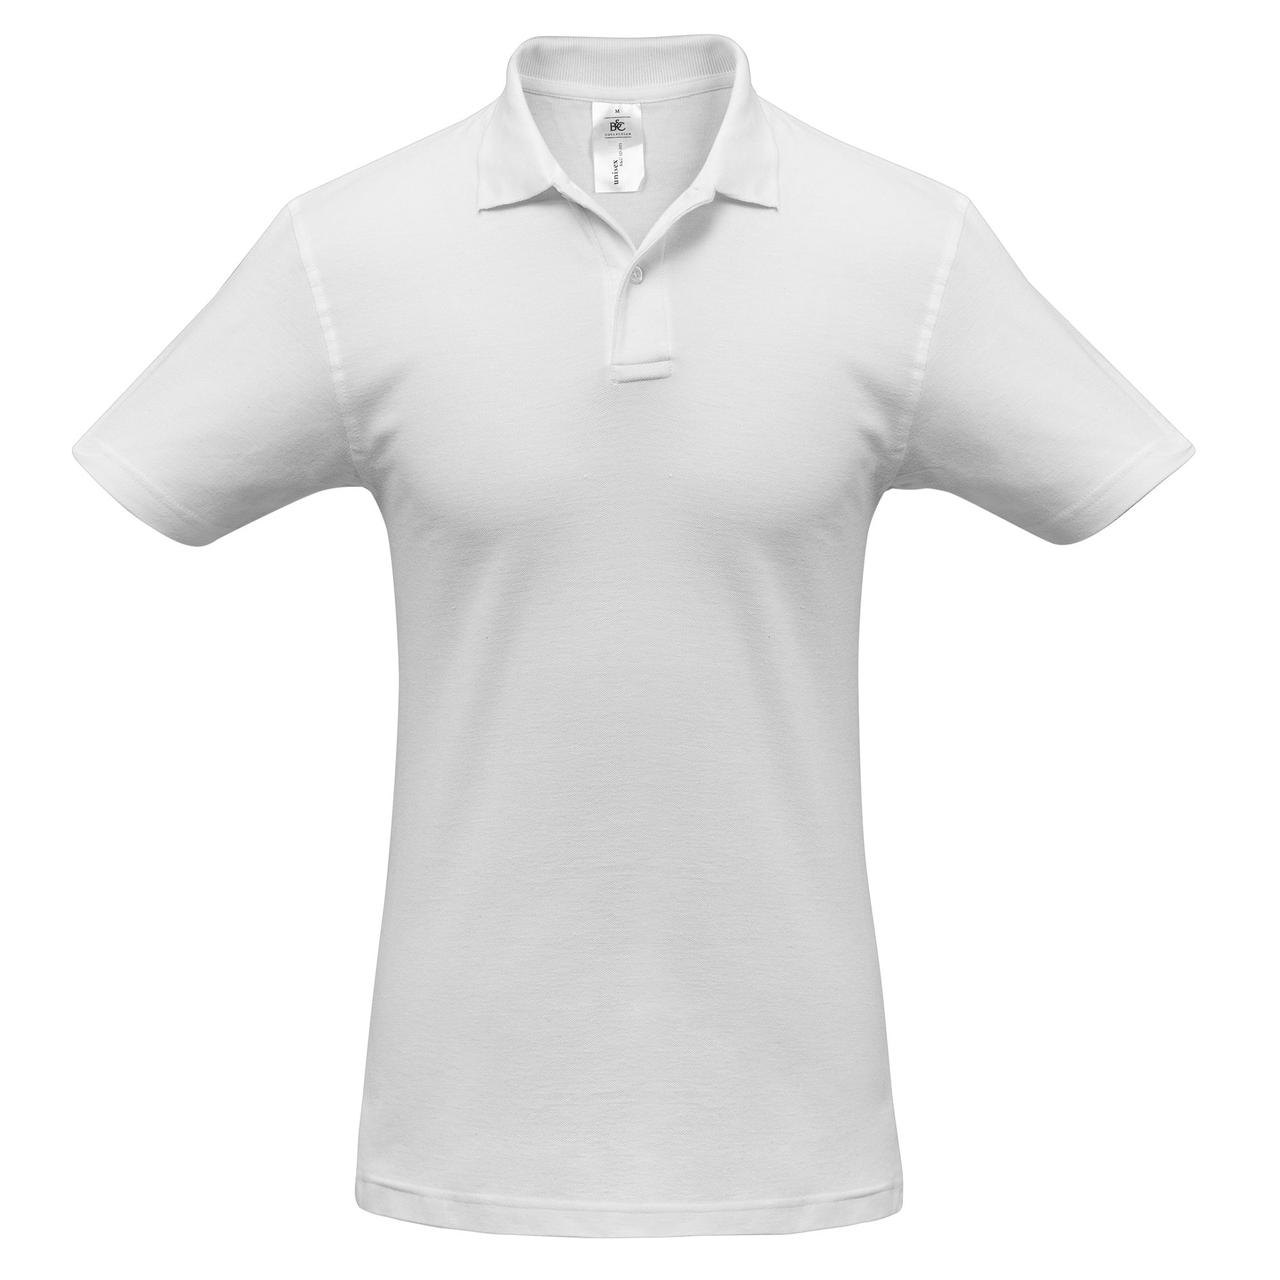 Рубашка поло ID.001 белая (артикул PUI10001)